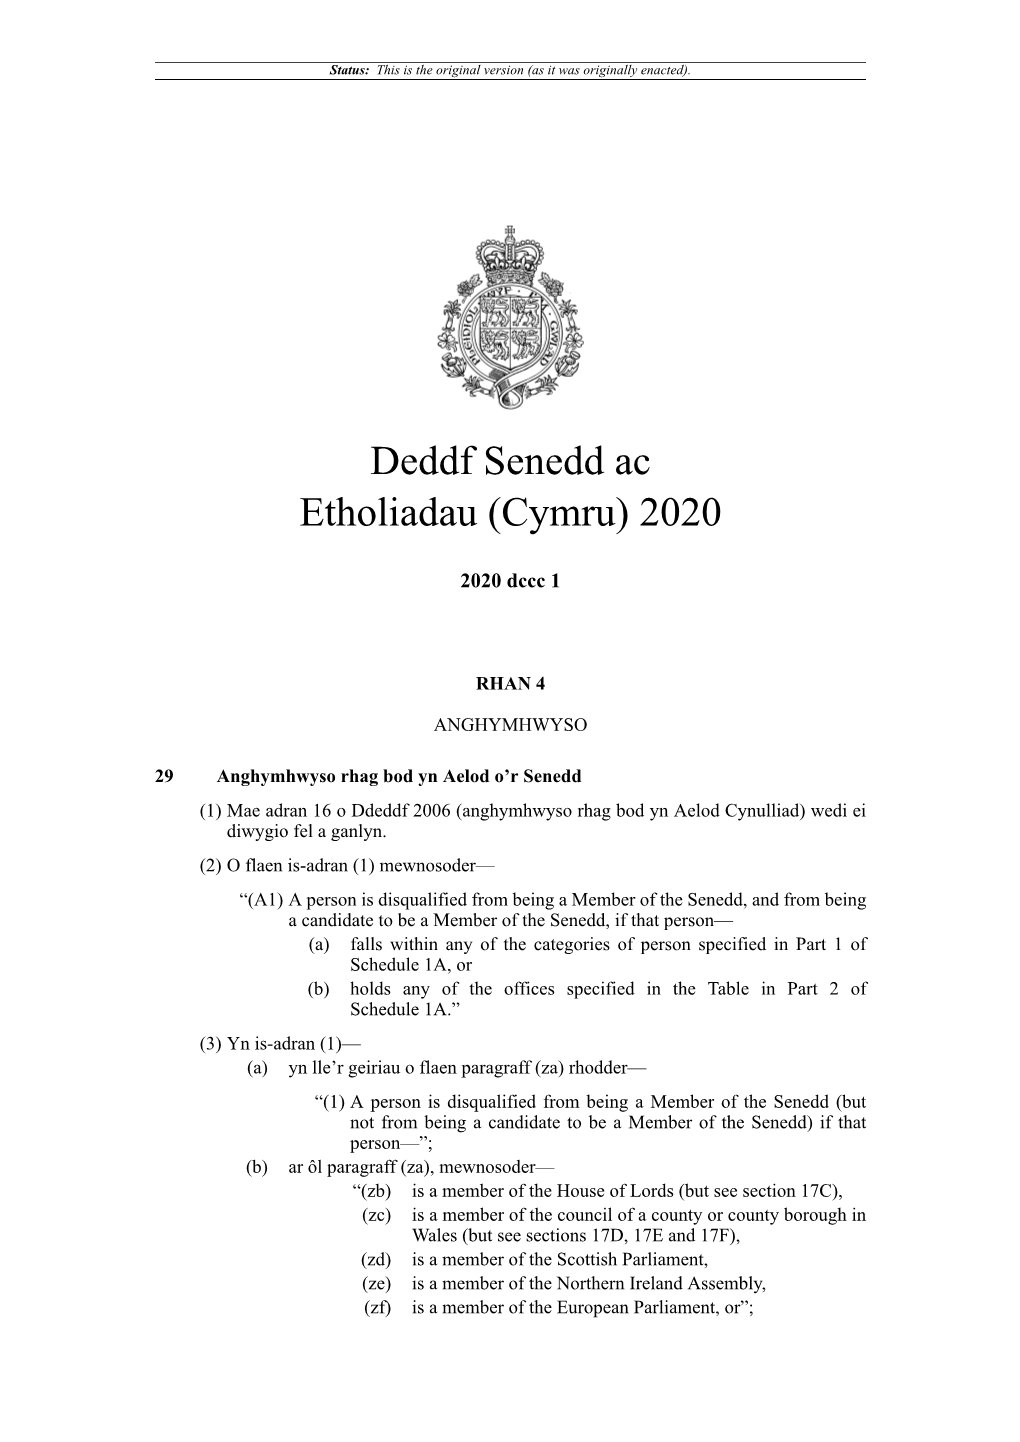 Deddf Senedd Ac Etholiadau (Cymru) 2020